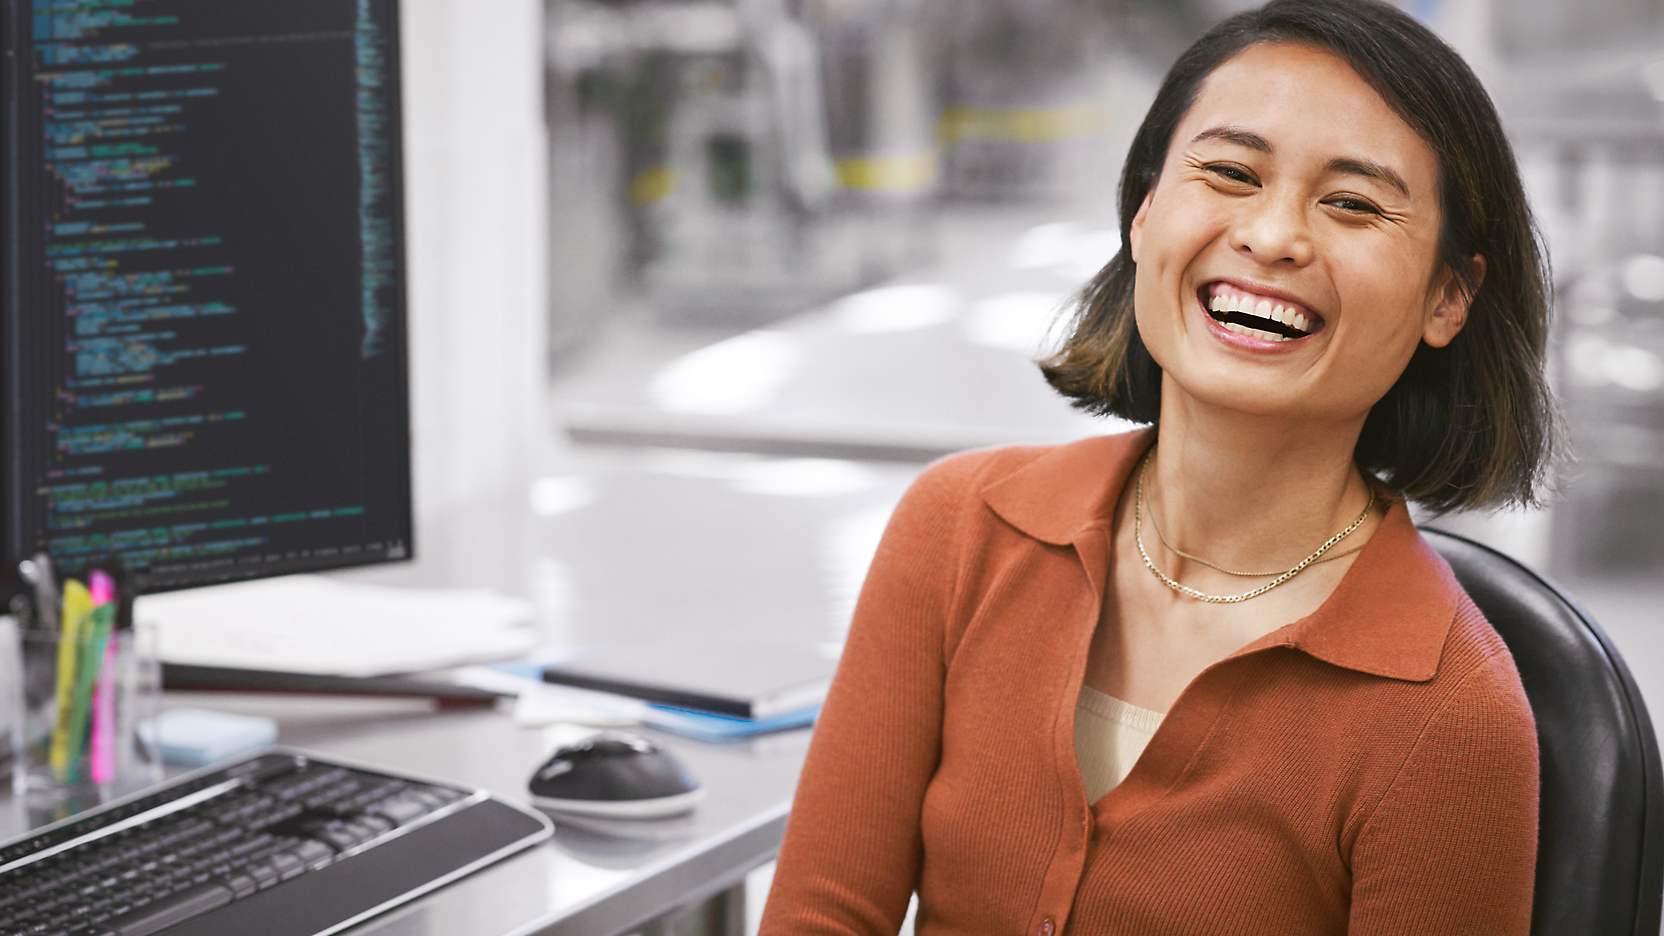 현대적인 사무실 환경에서 컴퓨터가 있는 책상에 앉아 화면에 코드를 표시하는 즐거운 표정의 여성.